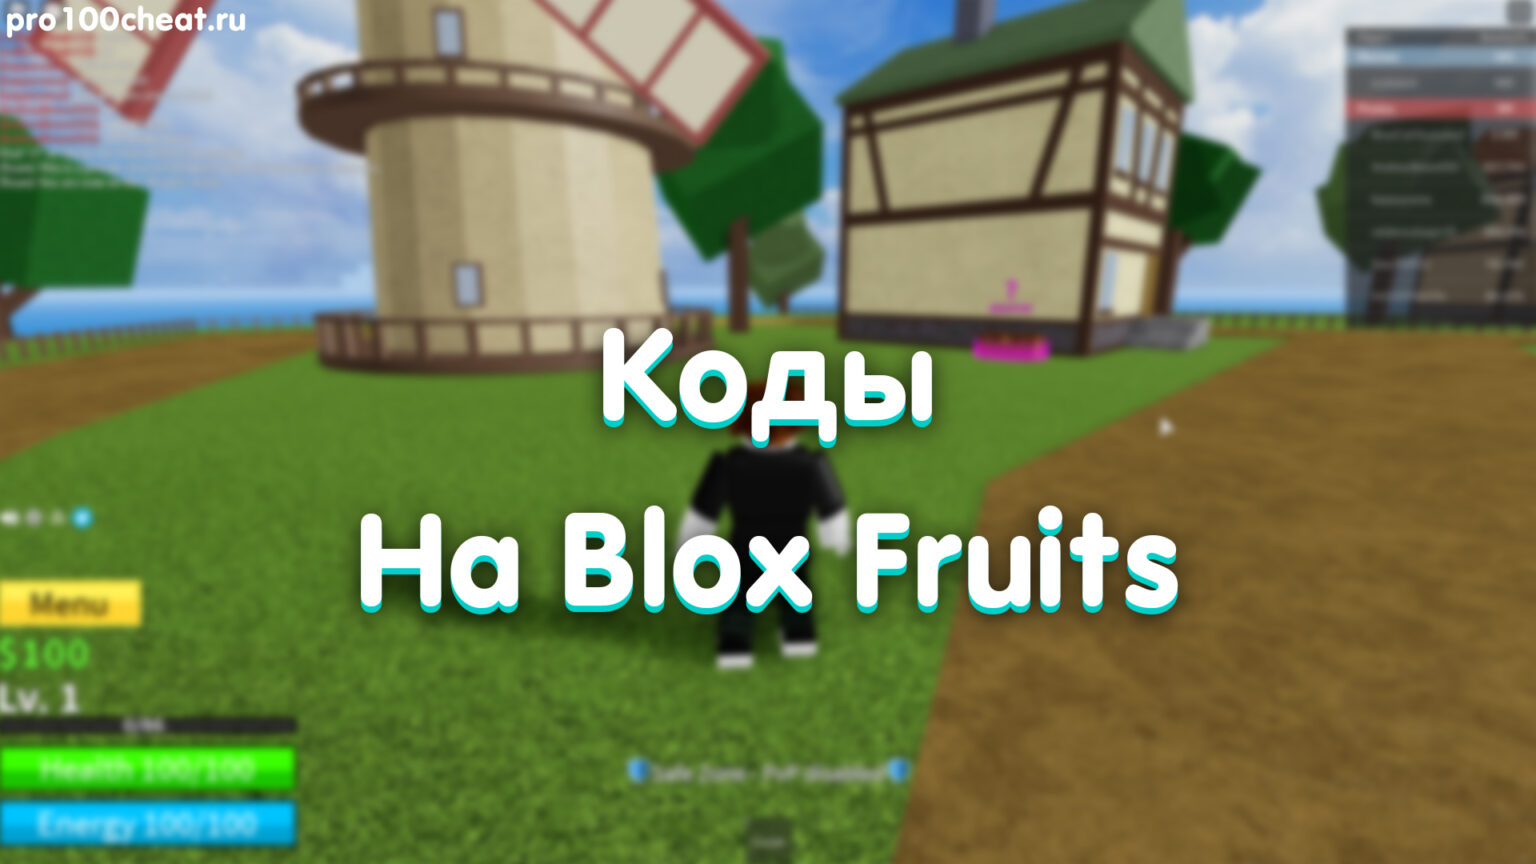 Blox fruits как получить. Коды BLOX Fruits. BLOX фрукты коды. Коды Блокс Фрут. Карта BLOX Fruits.